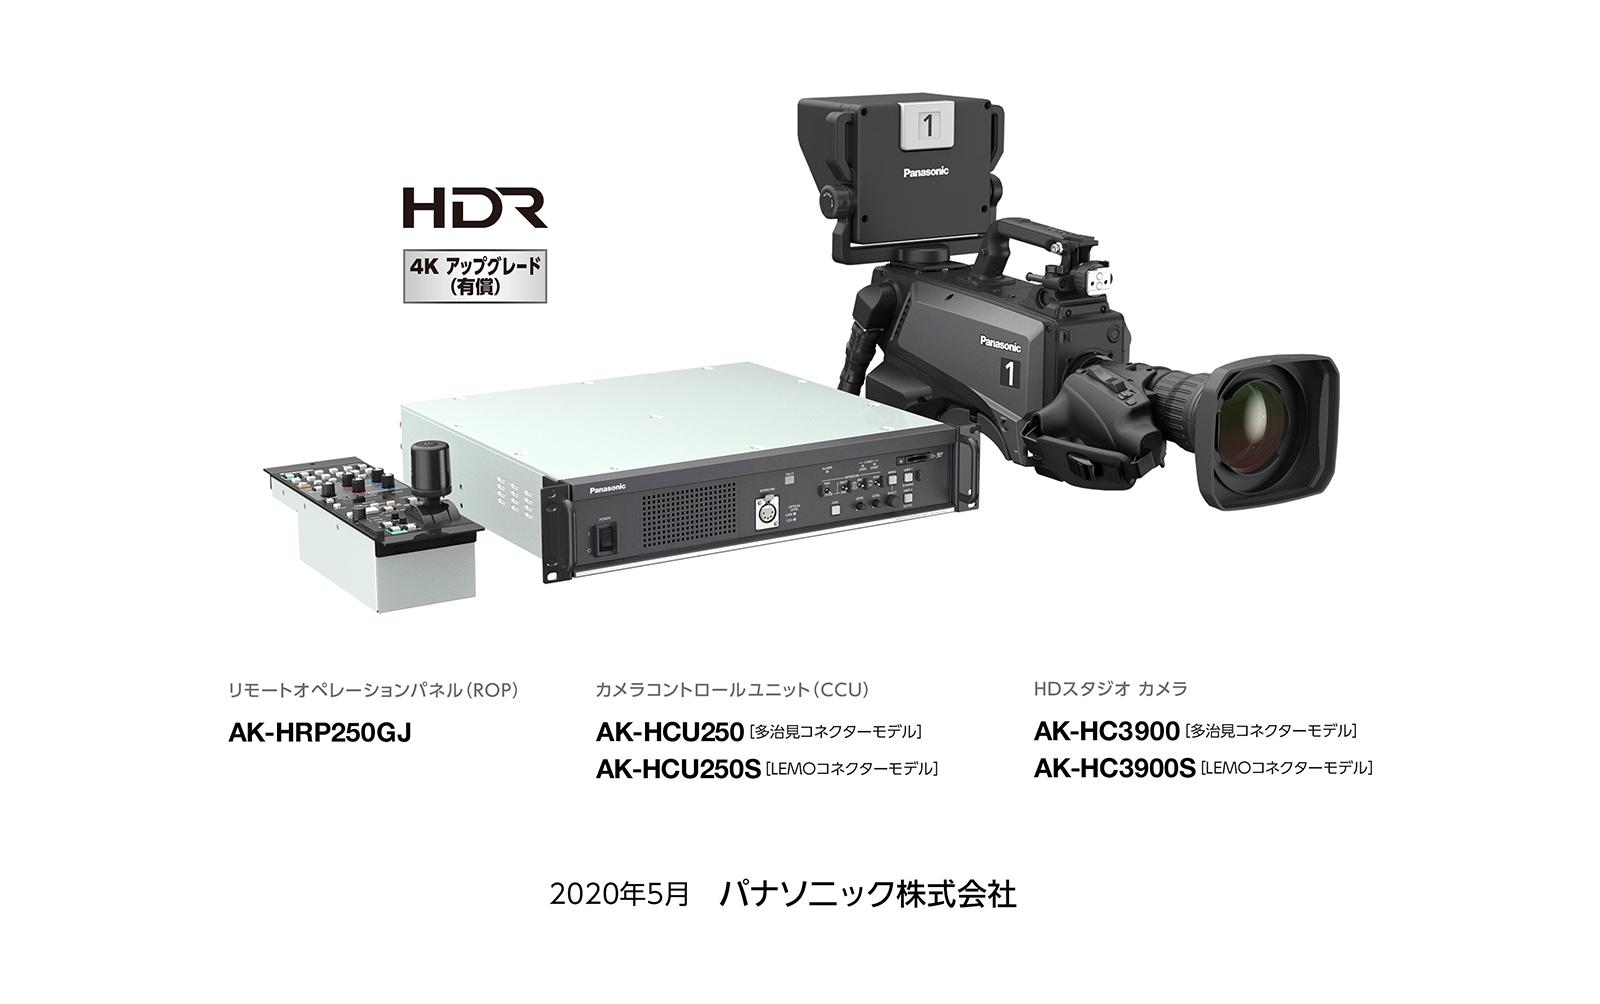 HDスタジオカメラシステム